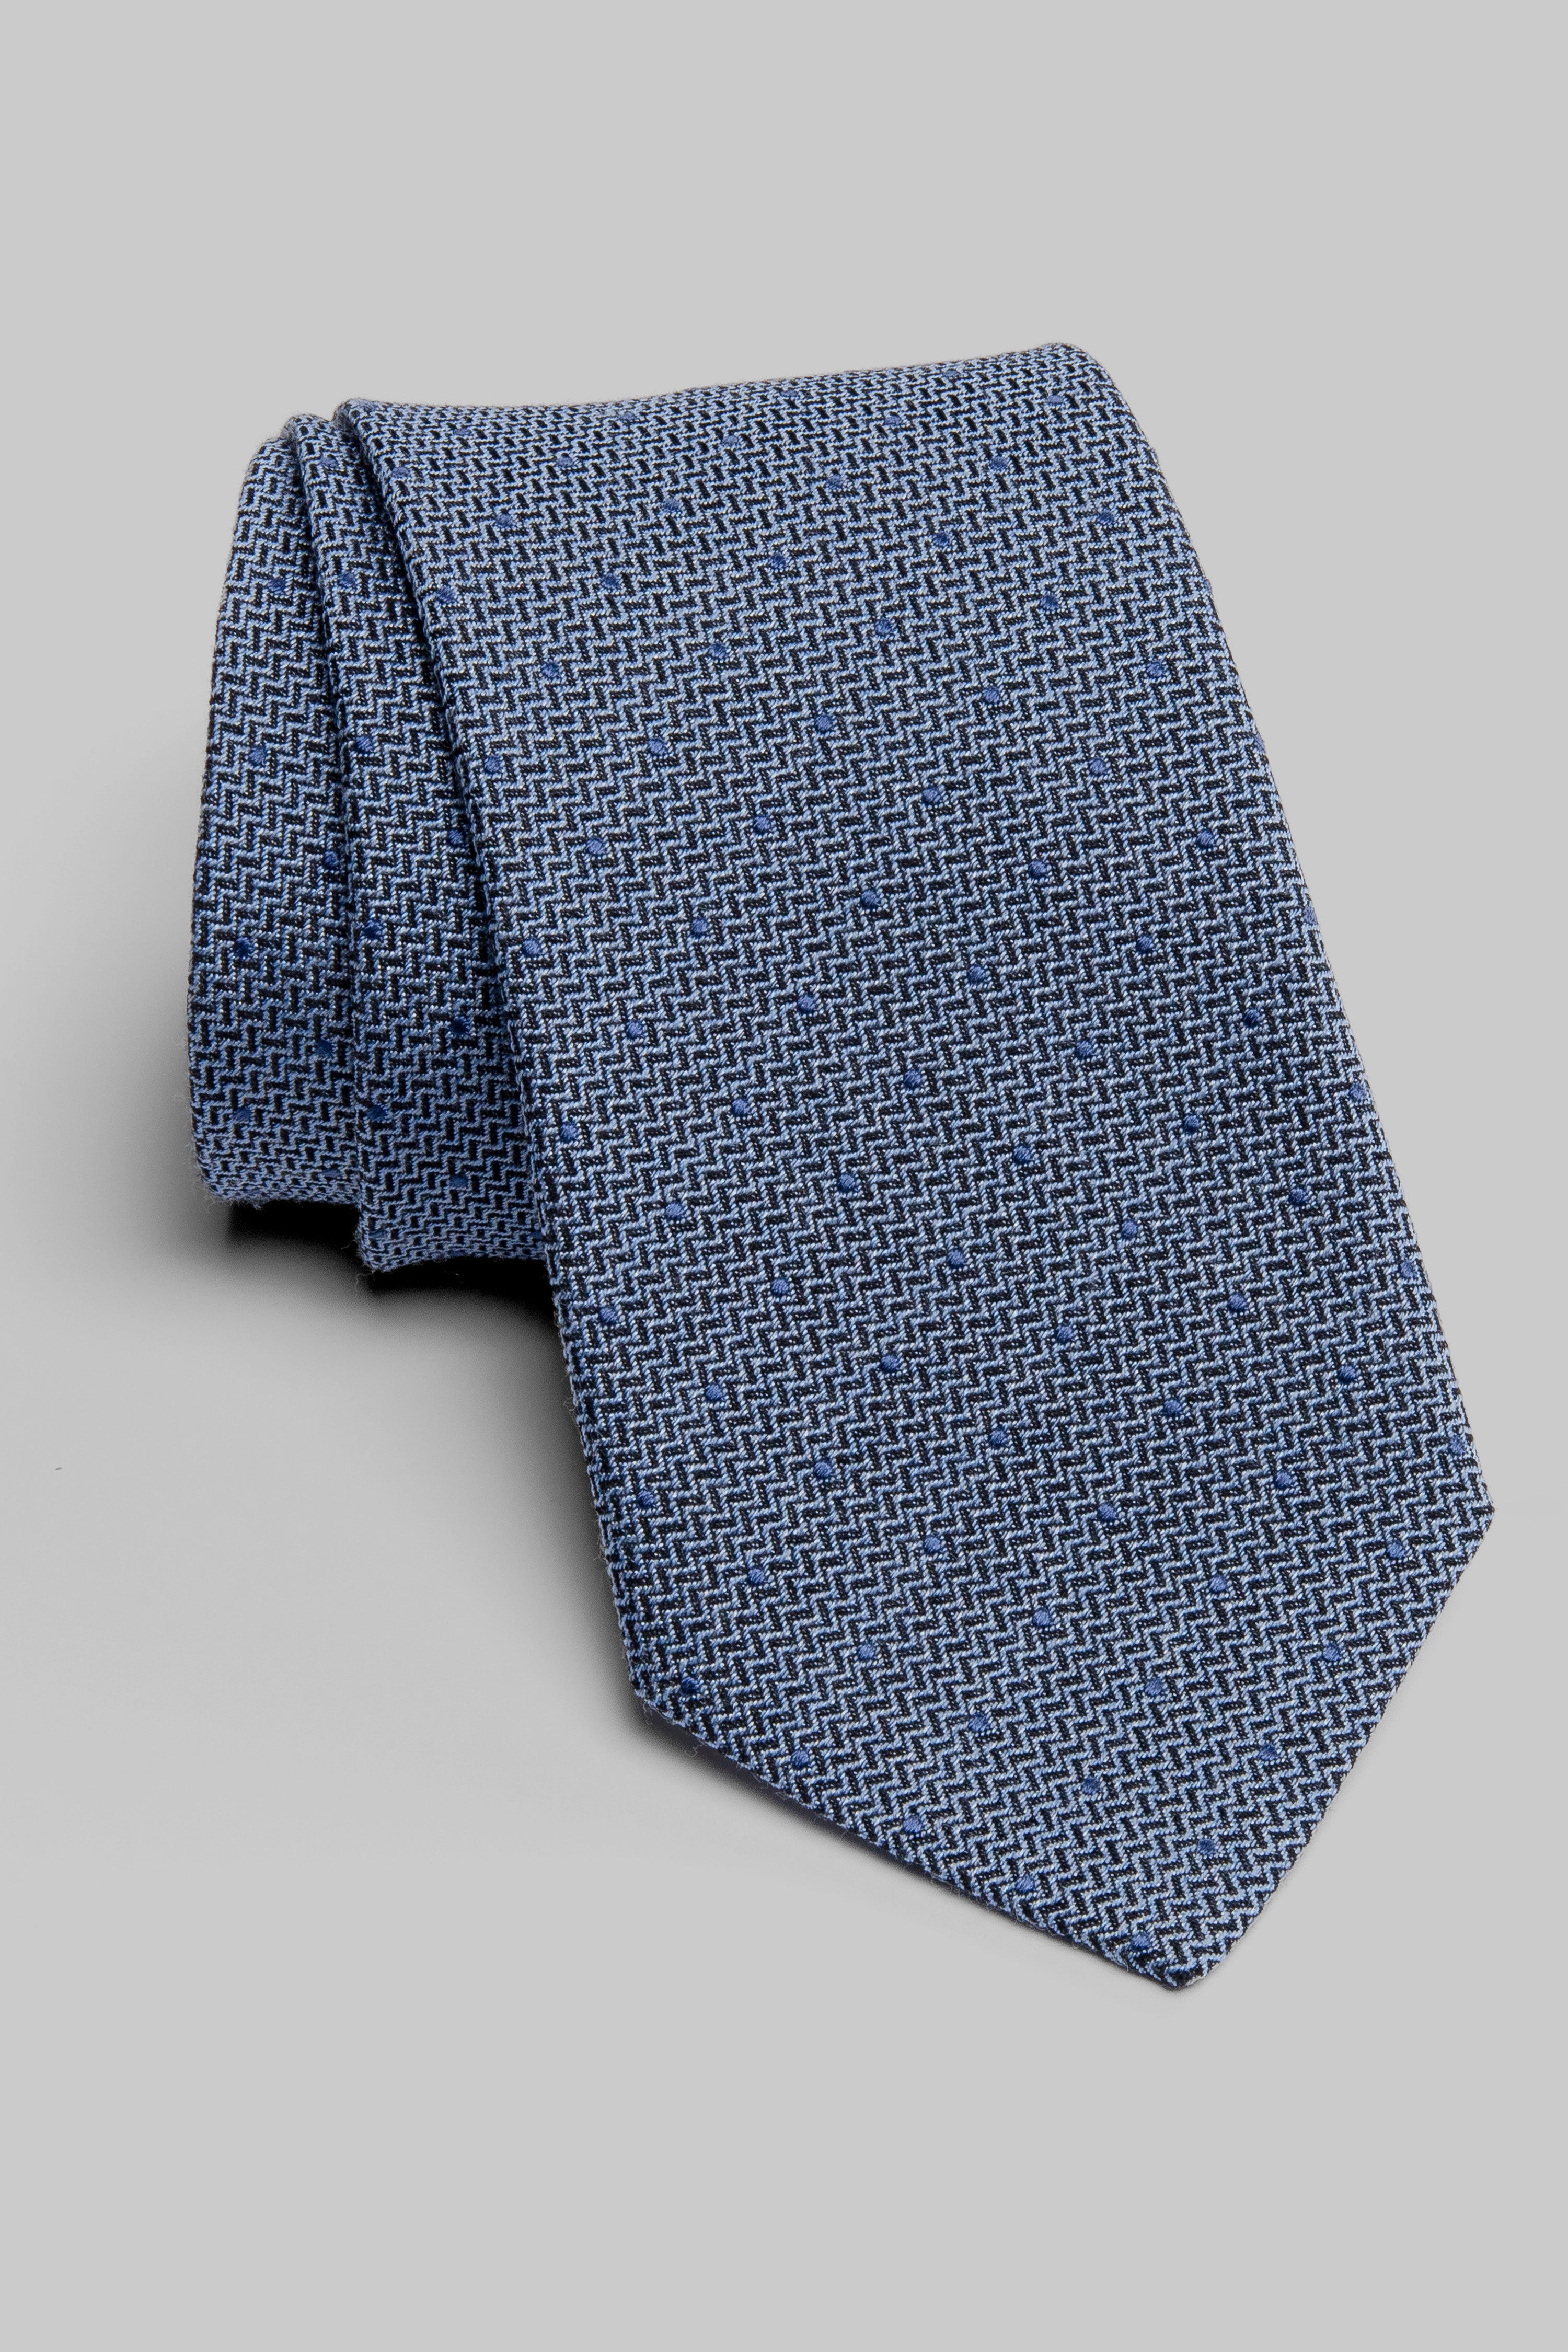 Vue alternative Cravate tissée à pois en bleu